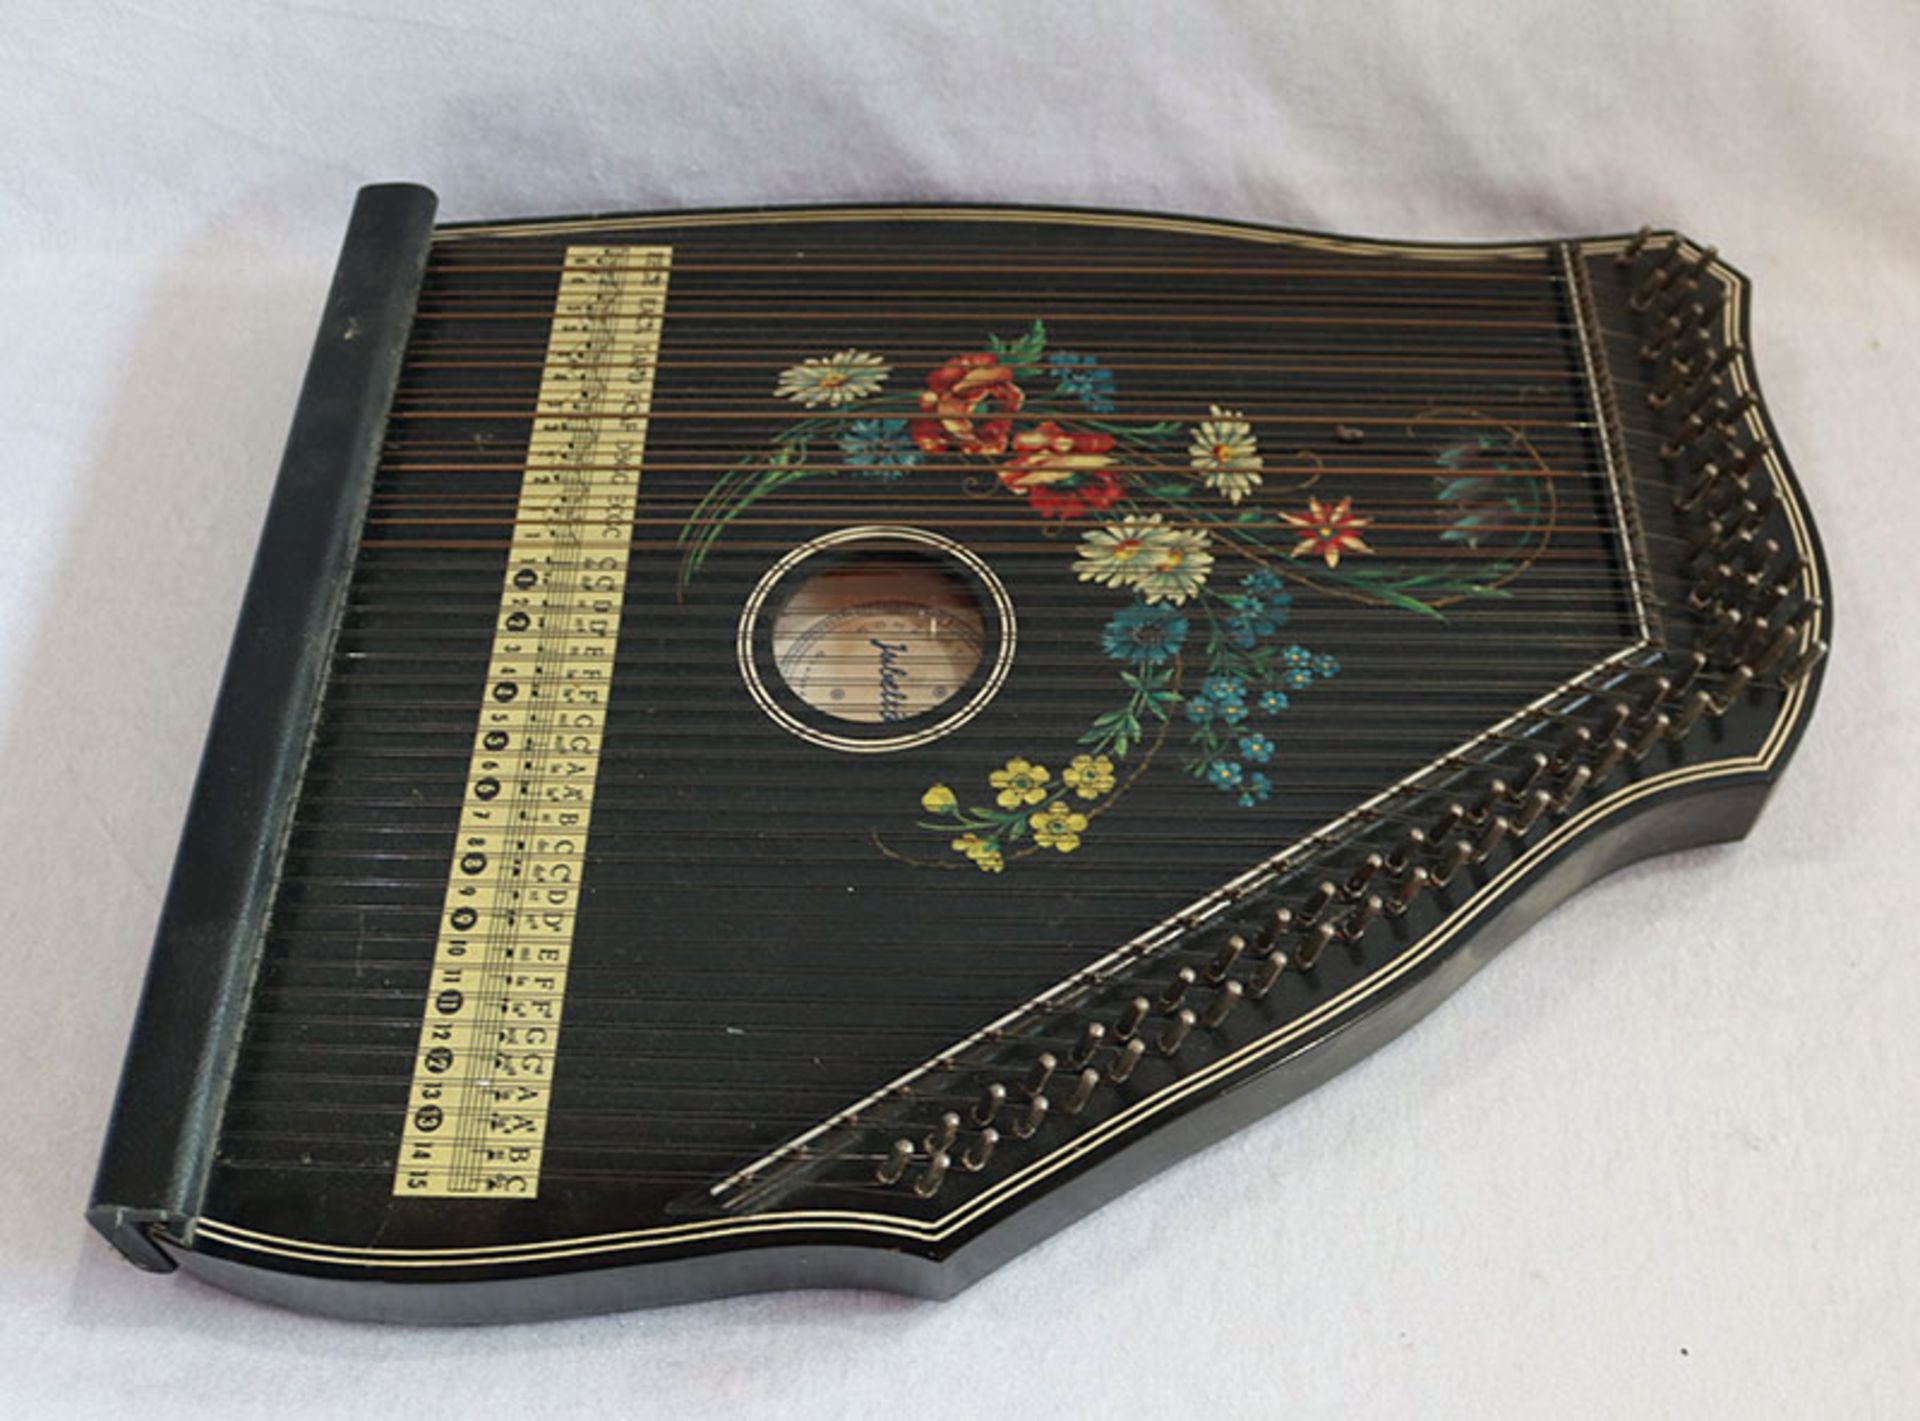 Zither, Jubeltöne Konzert-Salon-Harfe, mit Blumendekor, bespielt, 52 cm x 40 cm